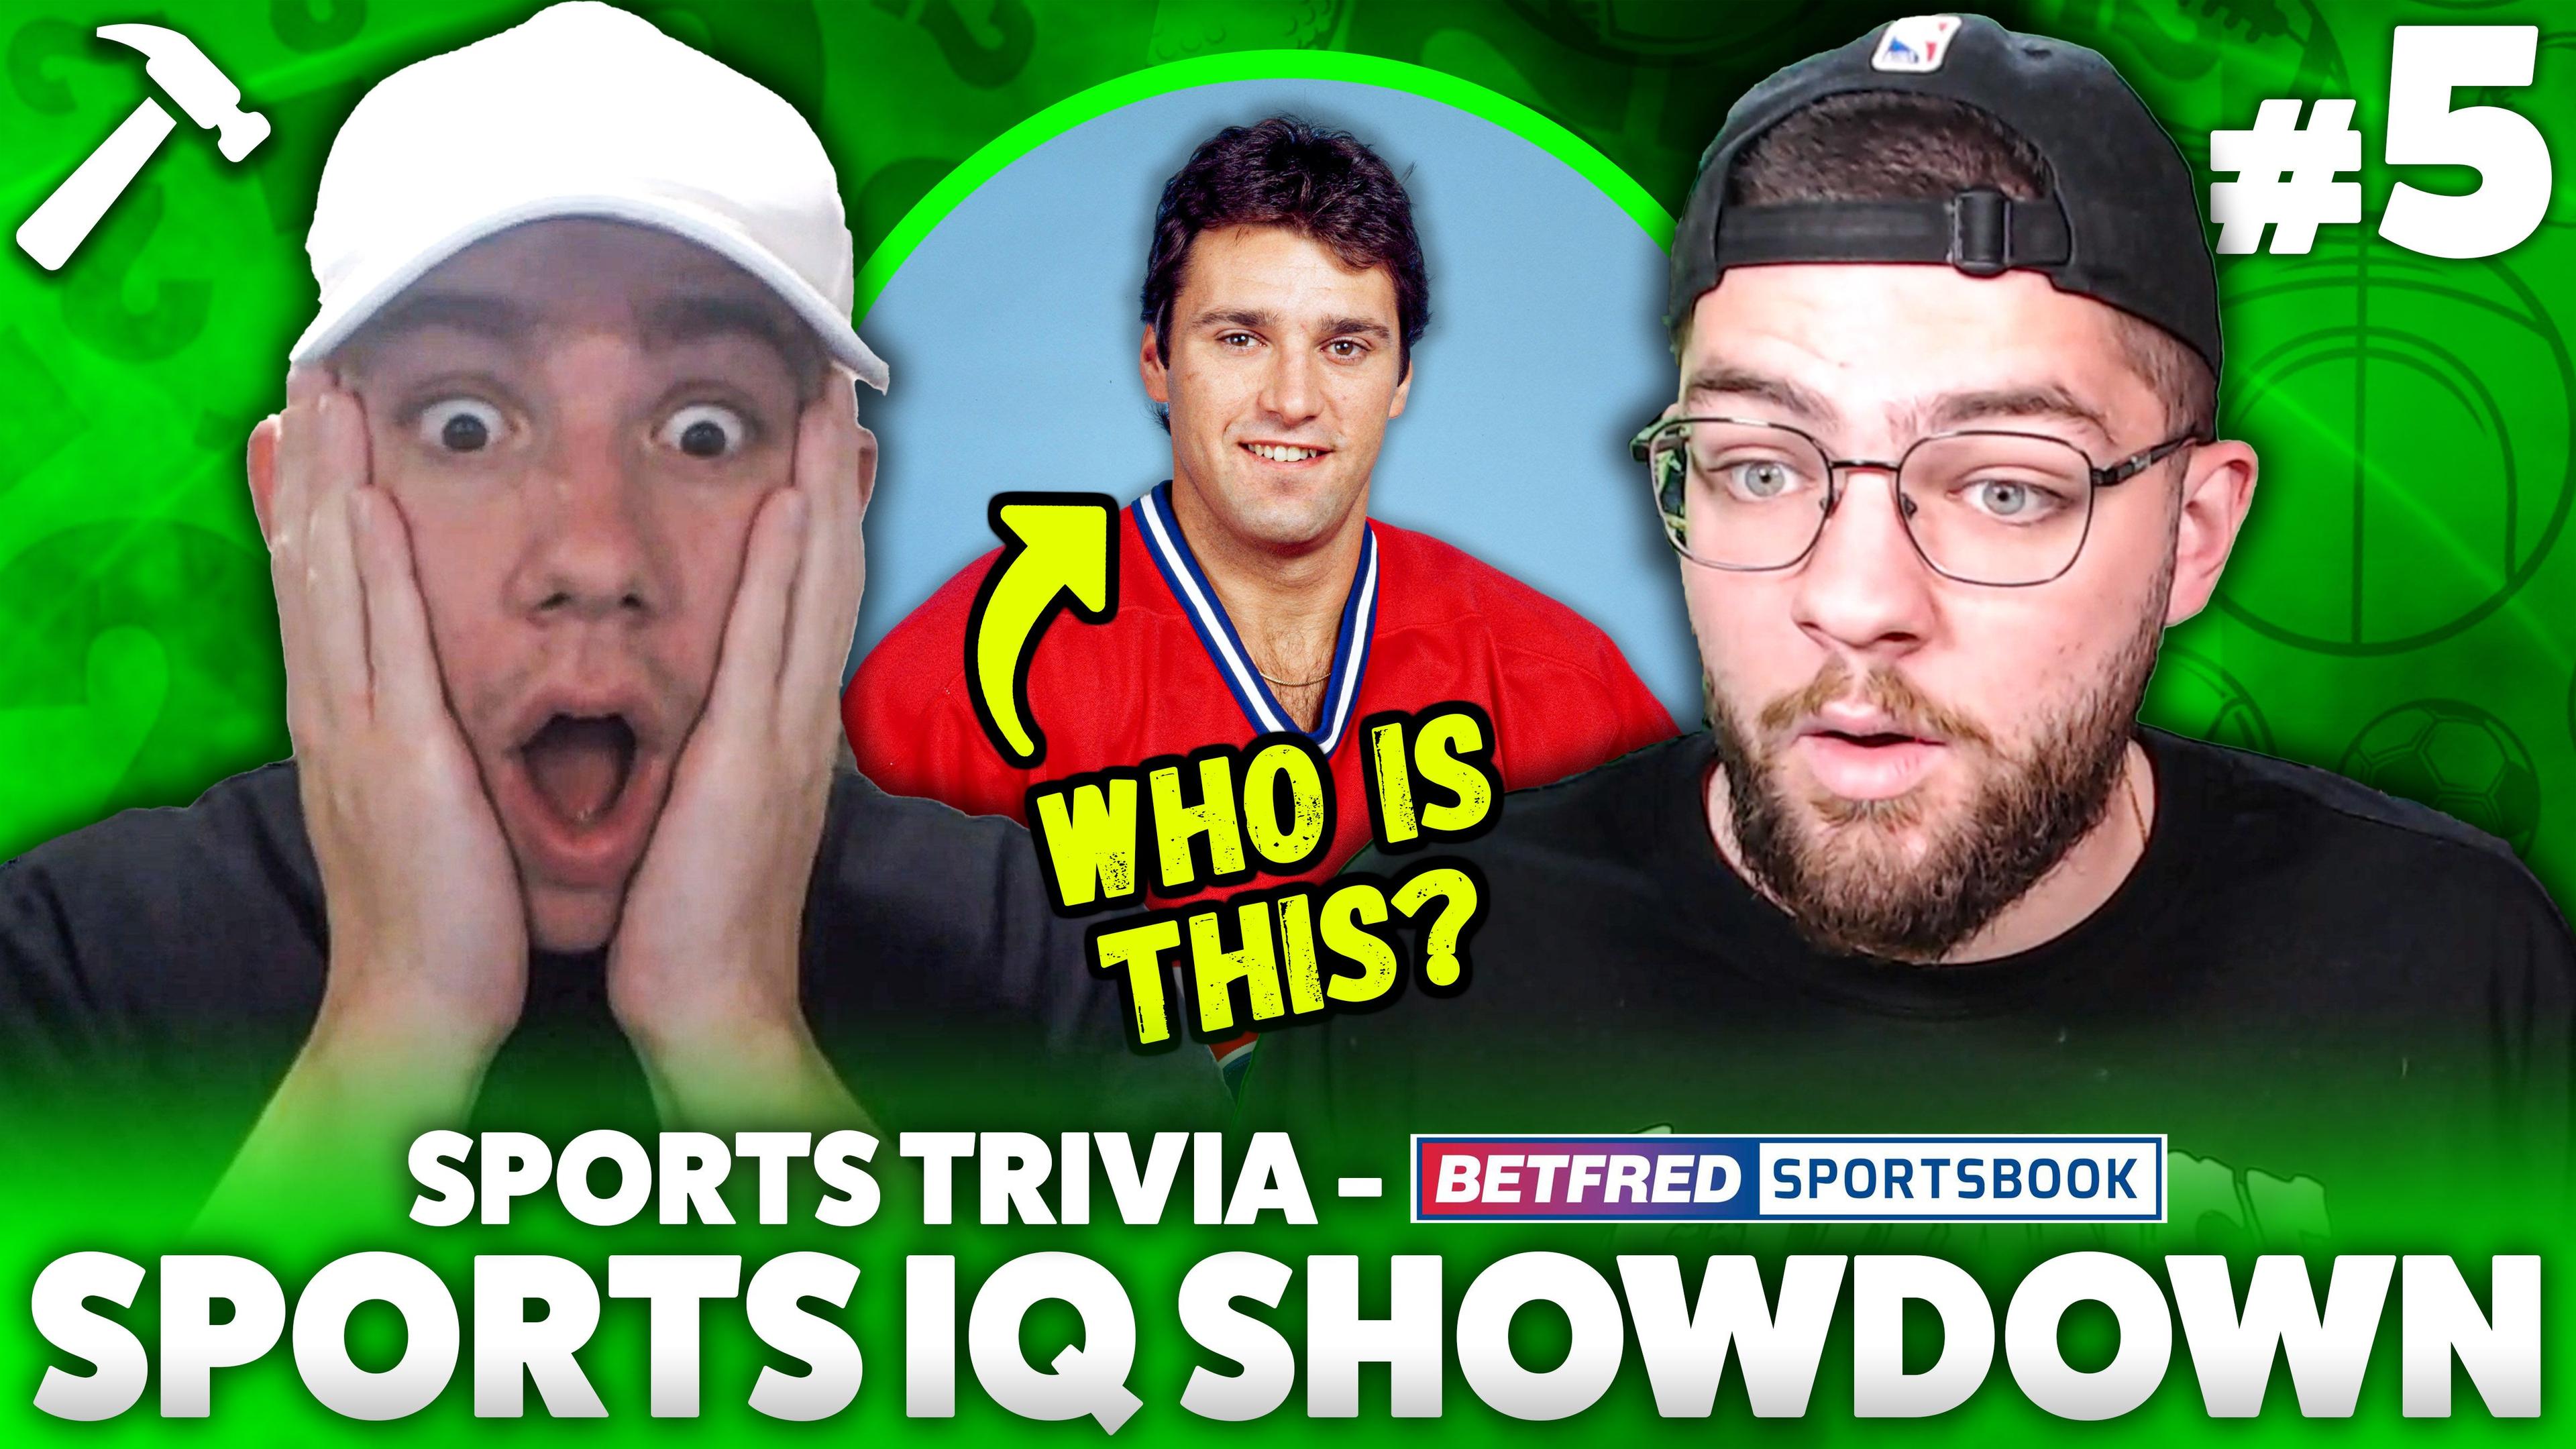 Sports IQ Showdown 5.jpg